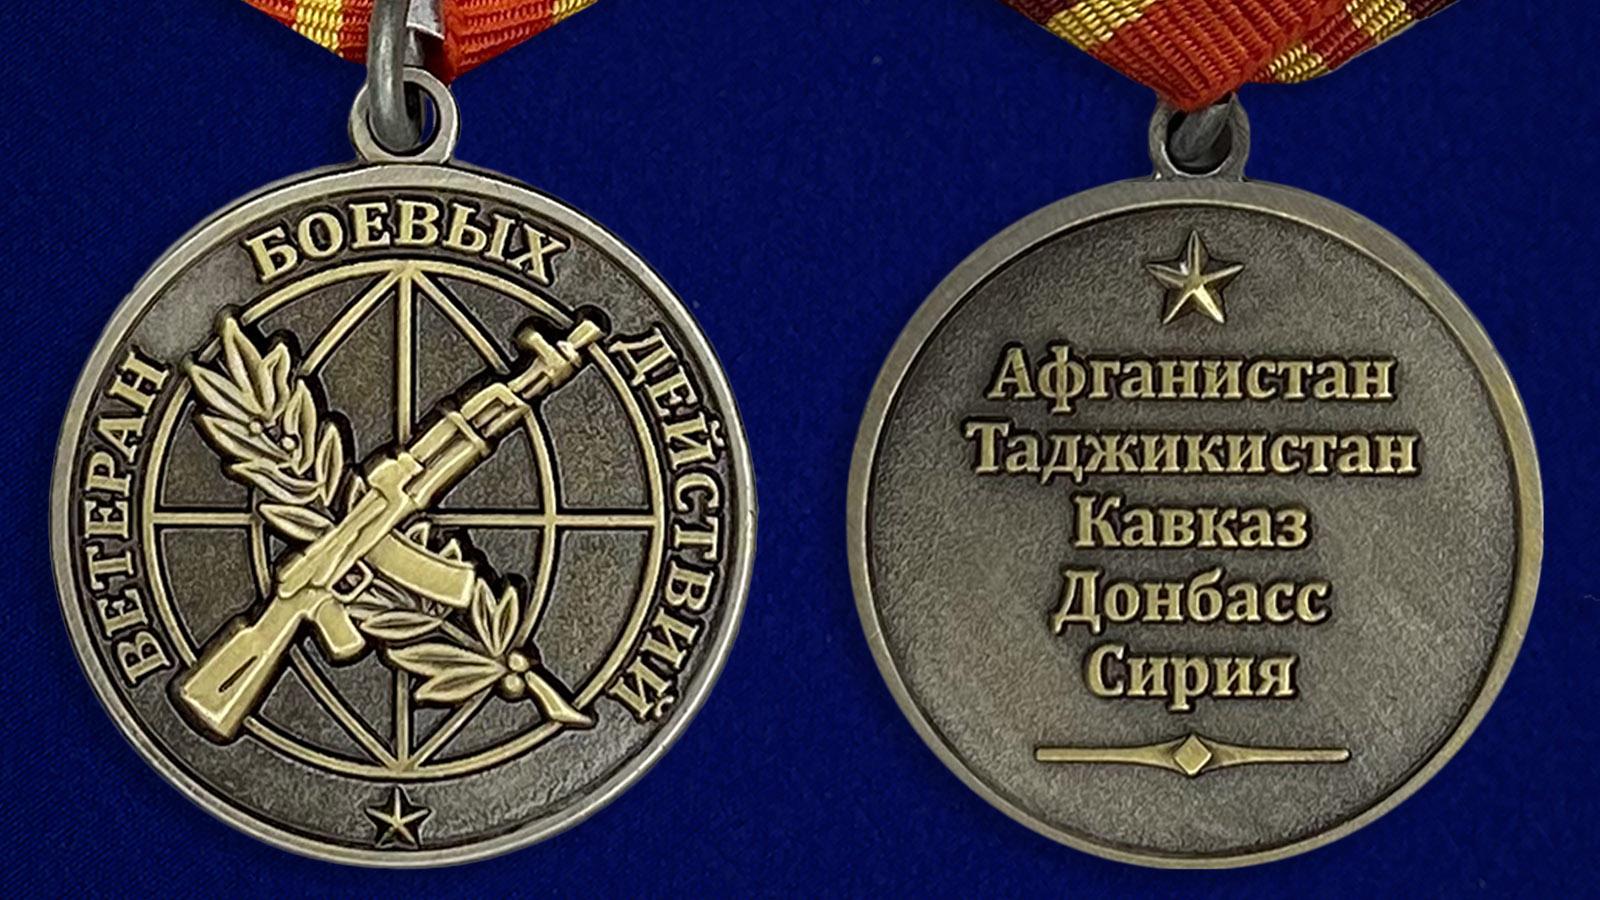 Описание медали "Ветеран боевых действий" - аверс и реверс